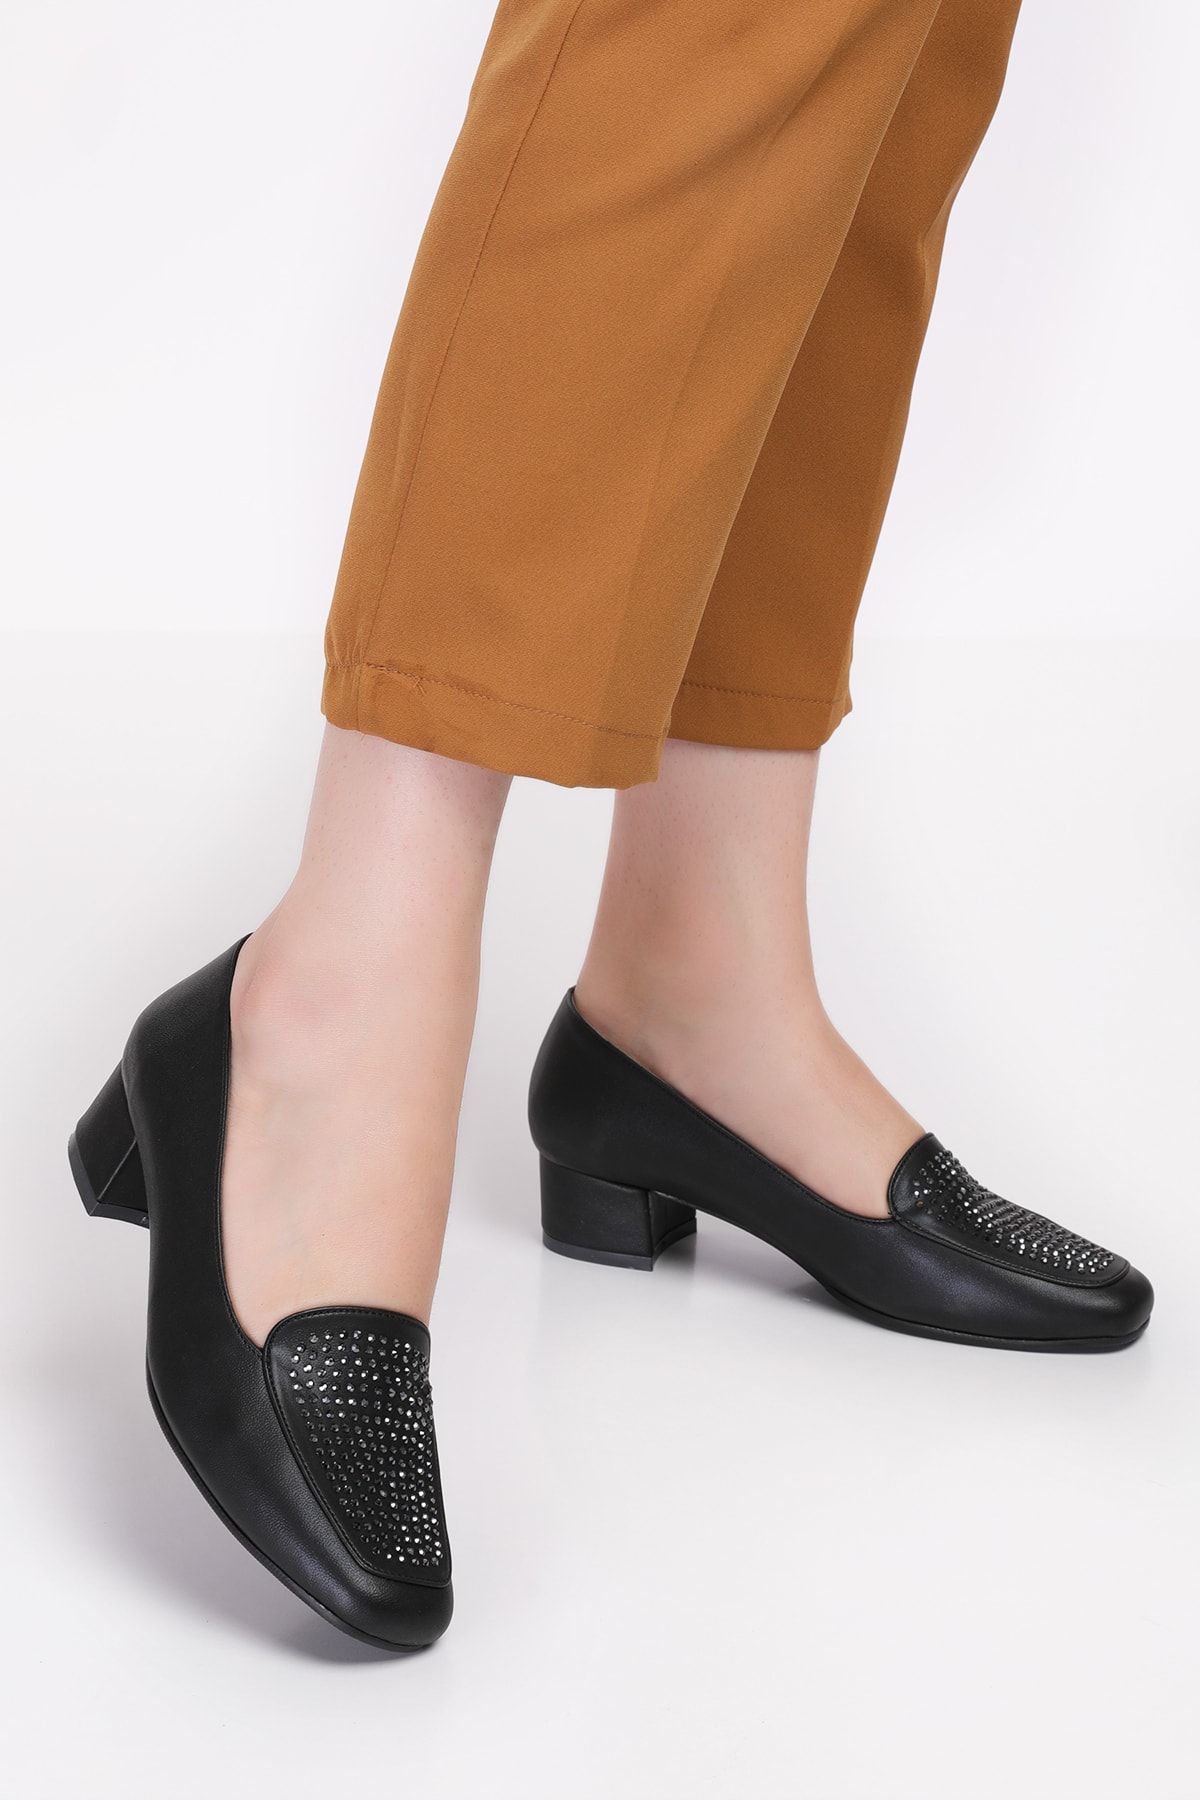 Akgün Terlik Kadın Siyah Taş Hakiki Deri Kısa Topuklu Şık Ayakkabı